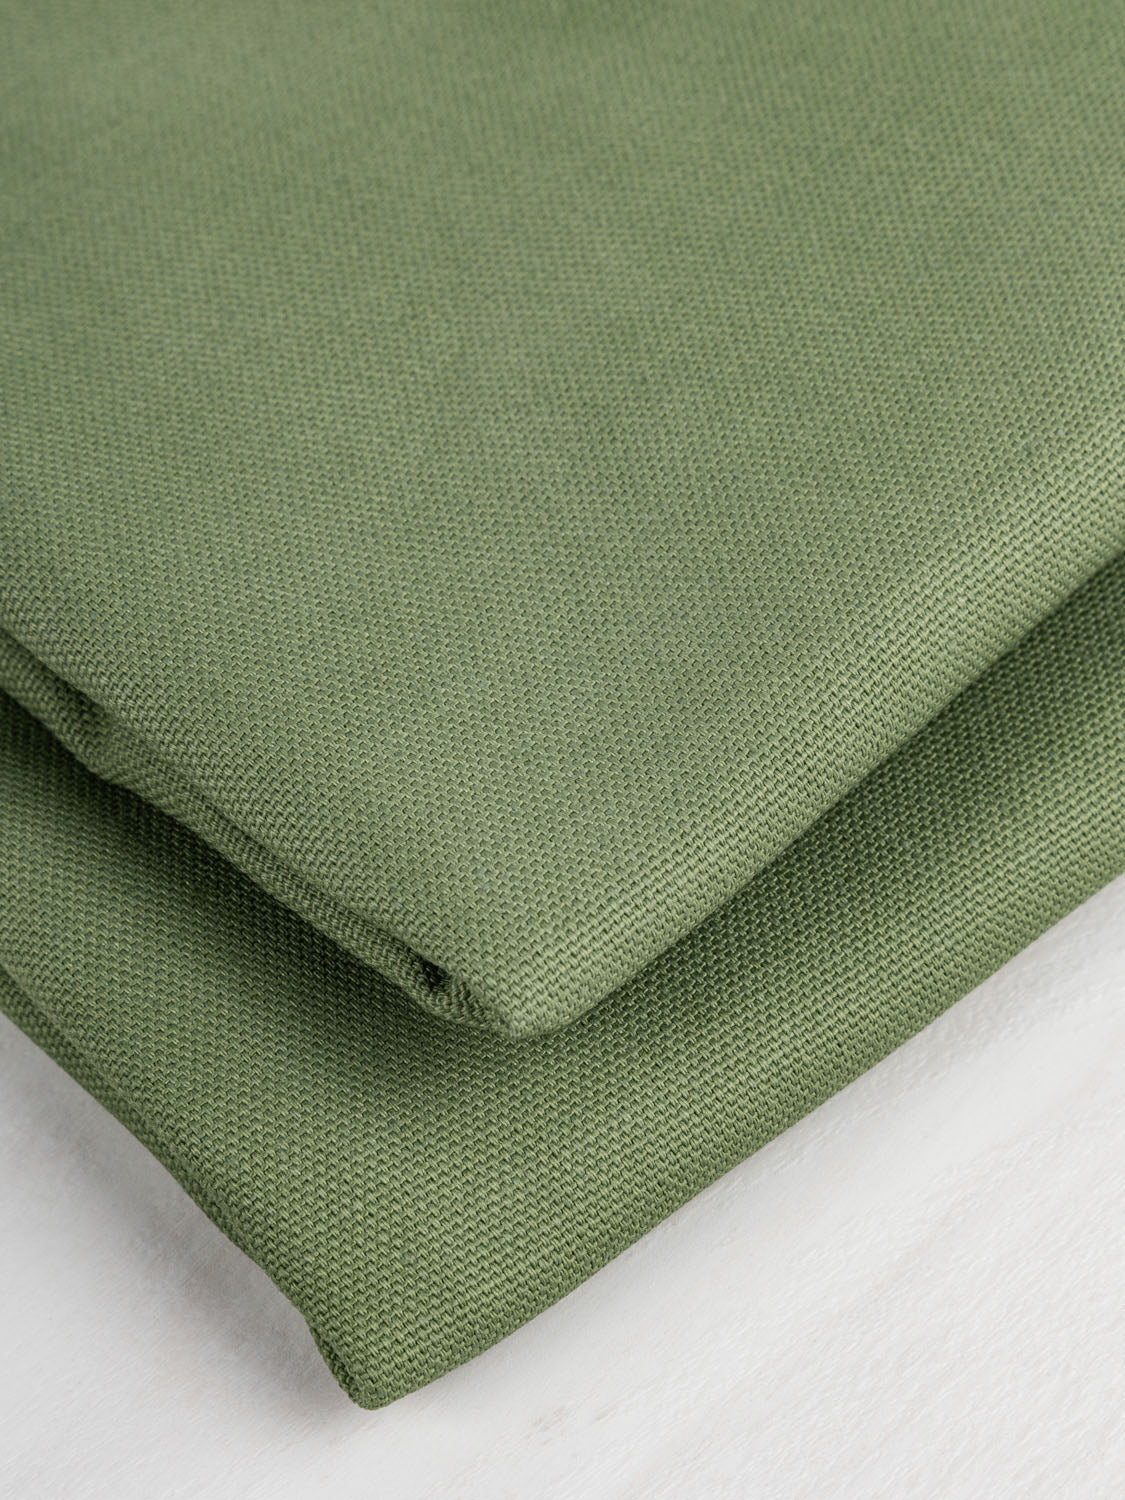 Linen & Linen Blends - Fern Textiles